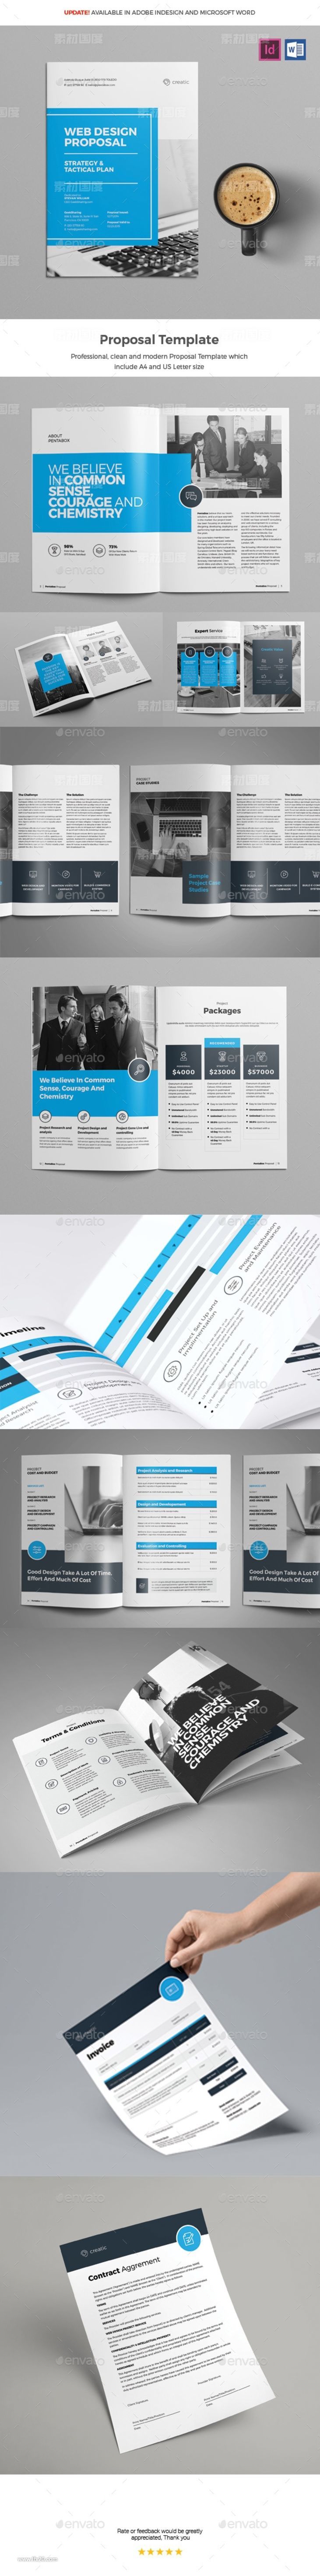 设计专业严谨的企业文化展示手册画册楼书杂志设计模板（indd）